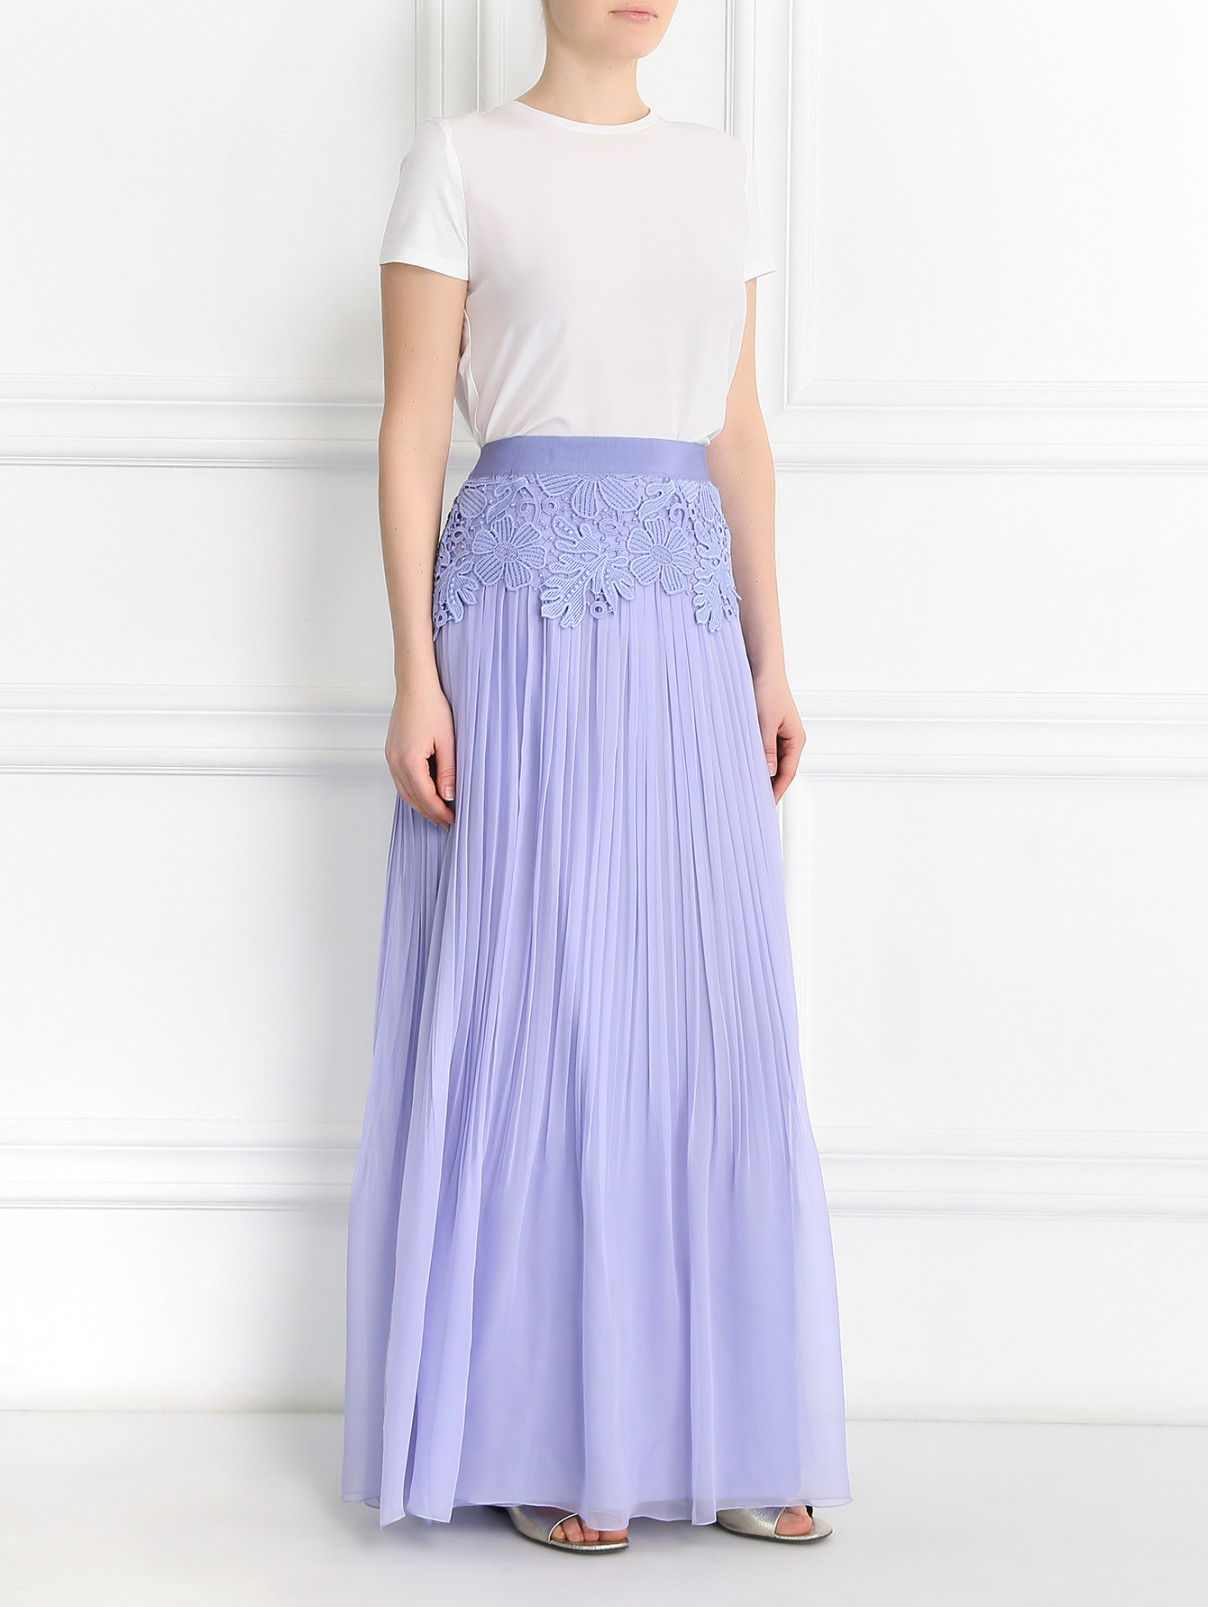 Плиссированная юбка из шелка с отделкой из кружева Alberta Ferretti  –  Модель Общий вид  – Цвет:  Фиолетовый